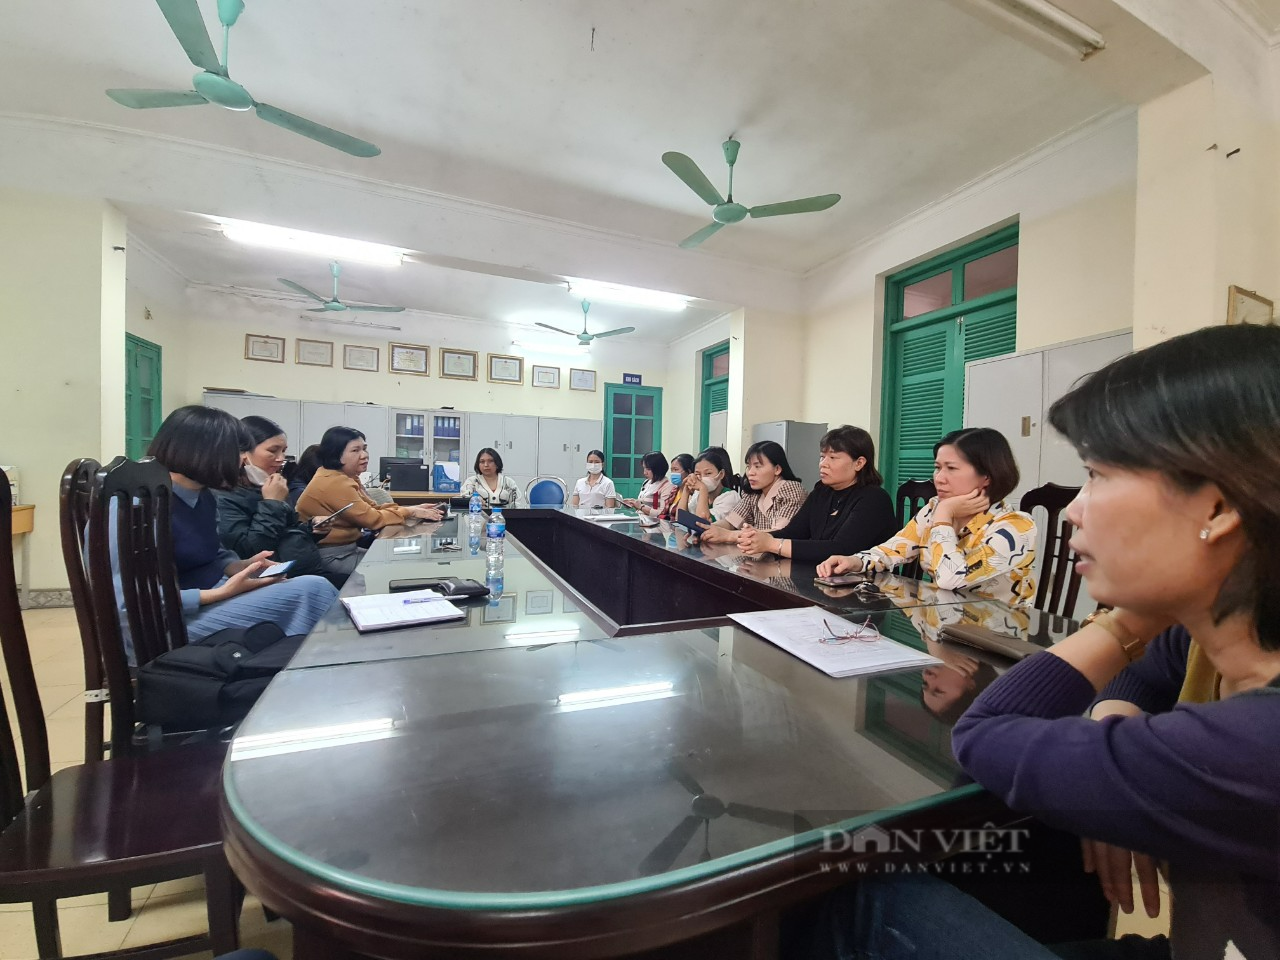 Trường CĐ Công nghiệp Dệt – May Nam Định 2 năm chưa trả lương, 40 tháng chưa đóng BHXH, hàng trăm giáo viên kêu cứu - Ảnh 3.